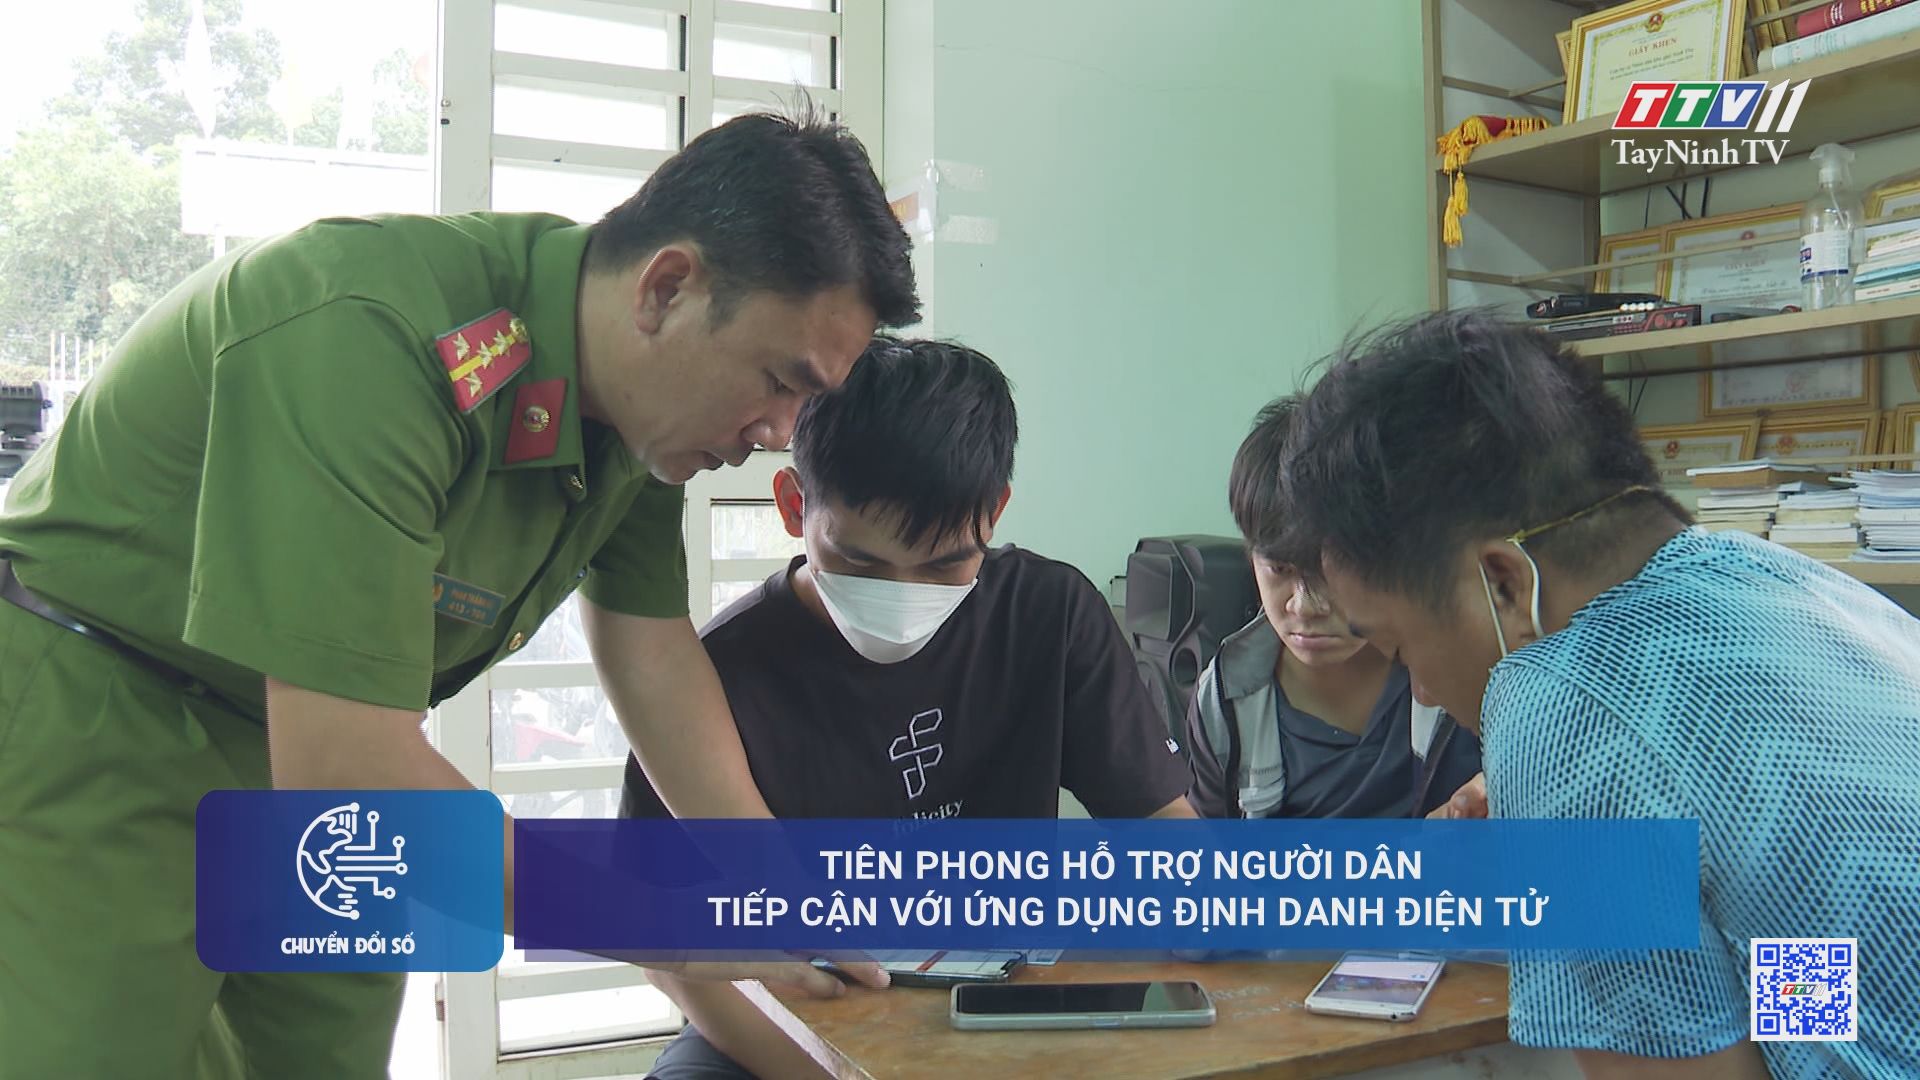 Tiên phong hỗ trợ người dân tiếp cận với ứng dụng định danh điện tử | Chuyển đổi số | TayNinhTV